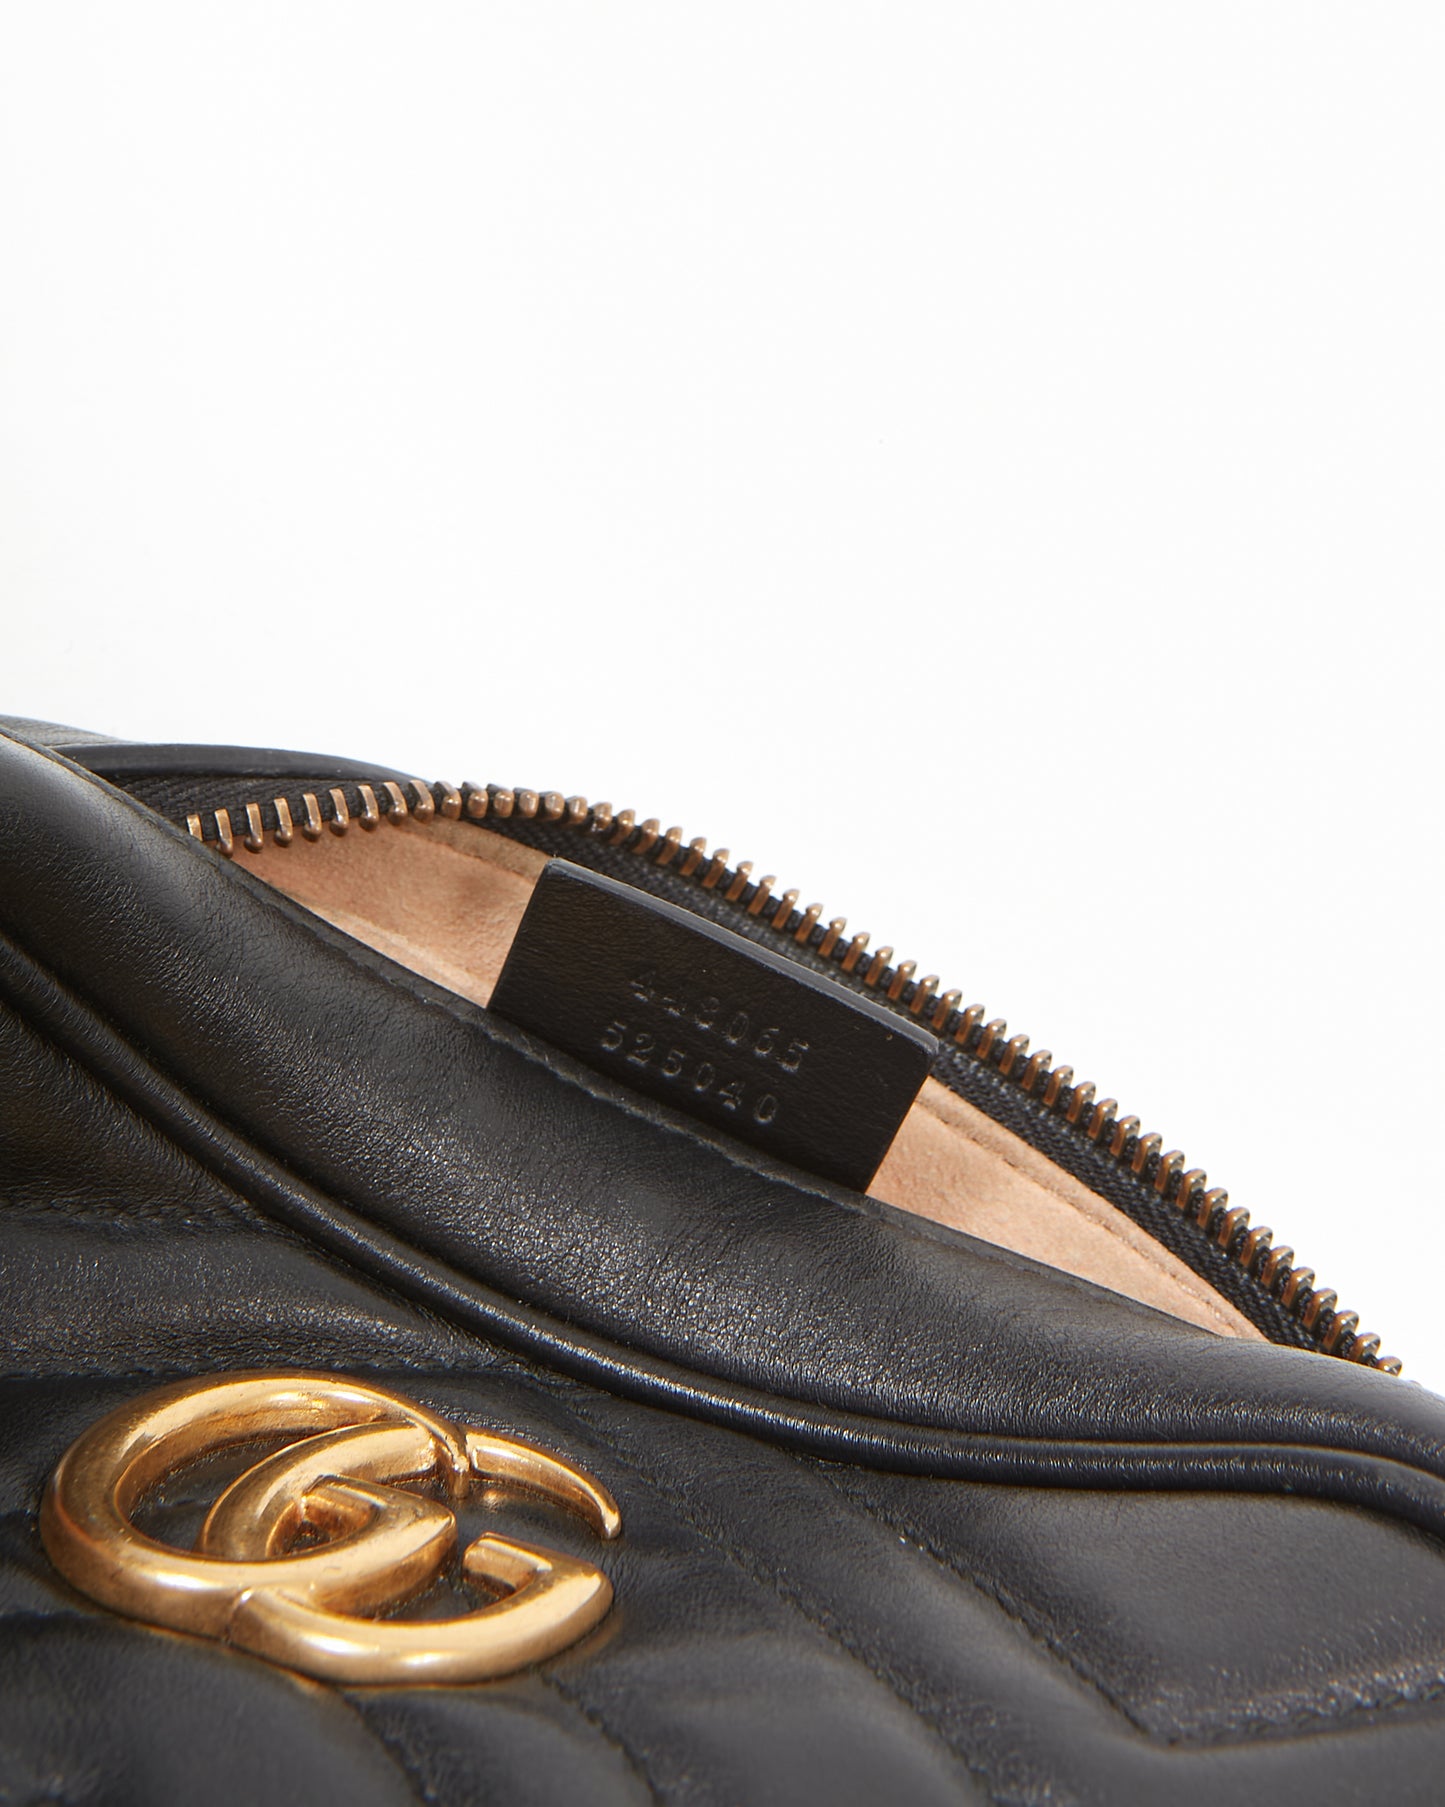 Mini sac pour appareil photo avec chaîne Marmont Matelasse en cuir noir Gucci